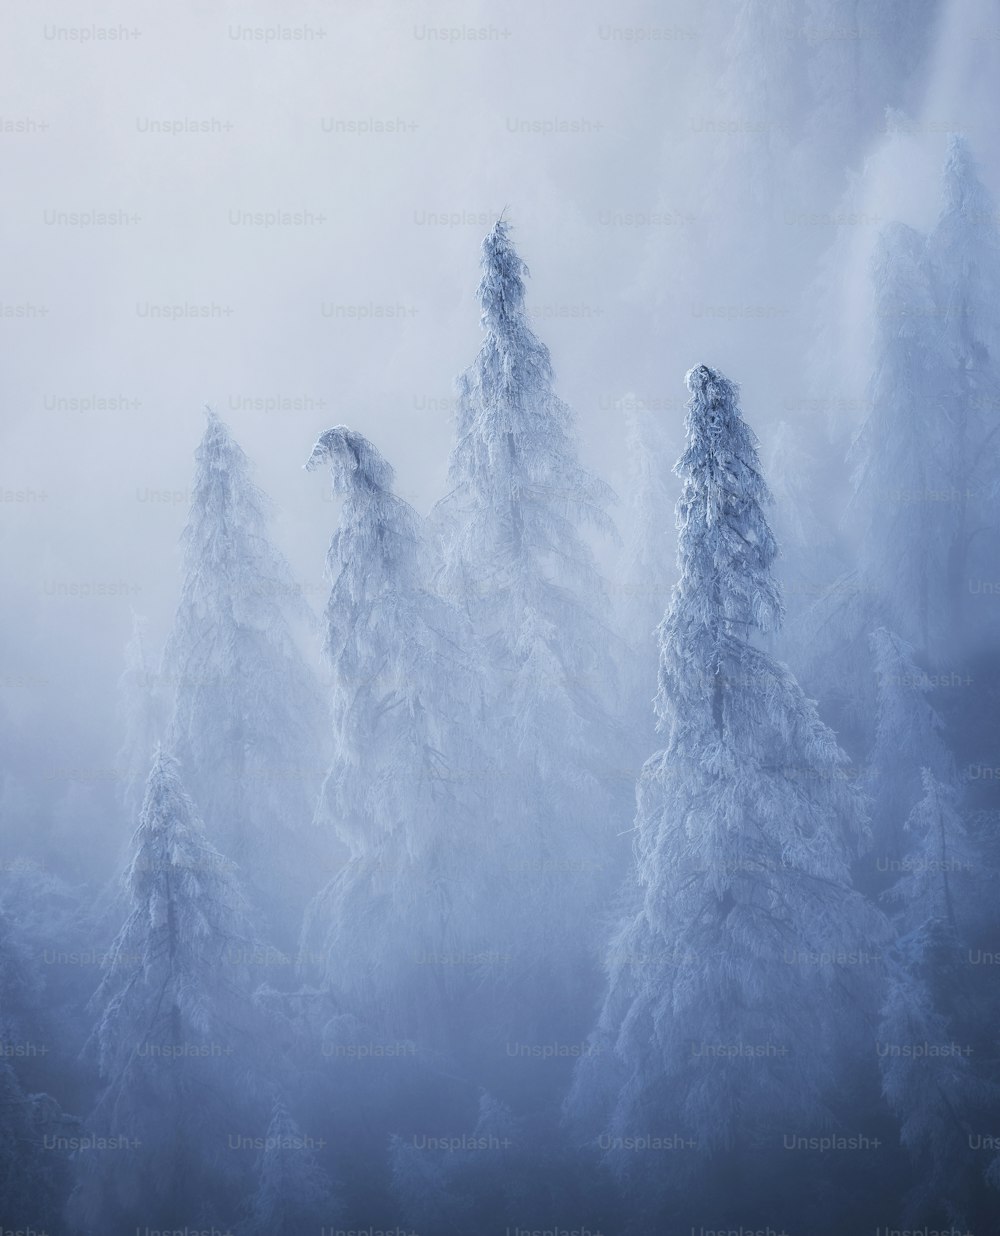 Eine Gruppe schneebedeckter Bäume in einem nebligen Wald